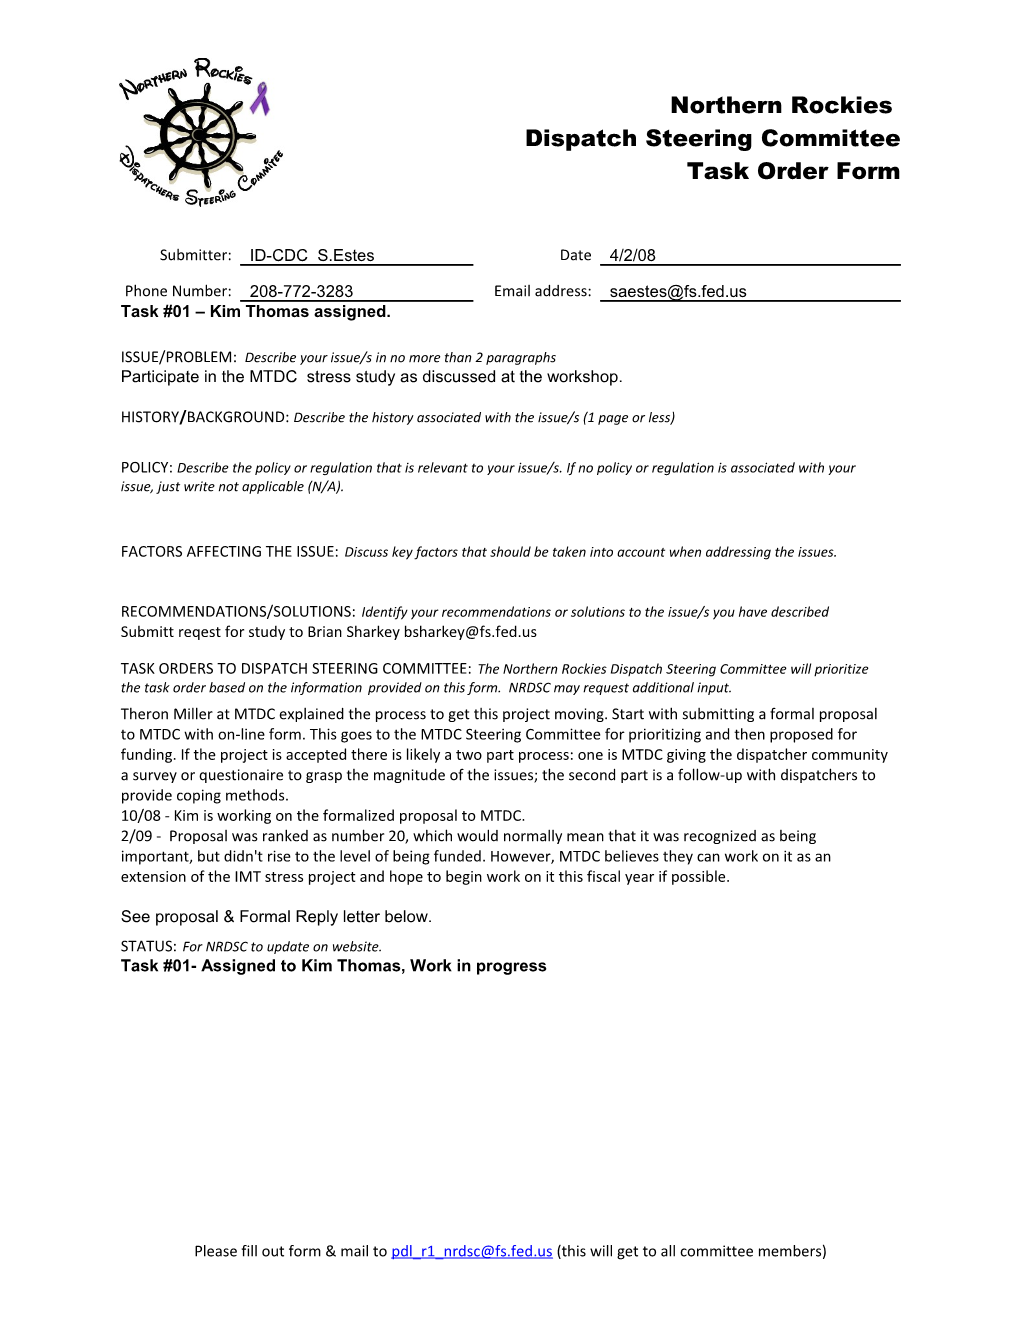 Northern Rockies Dispatch Steering Committee Task Order Form